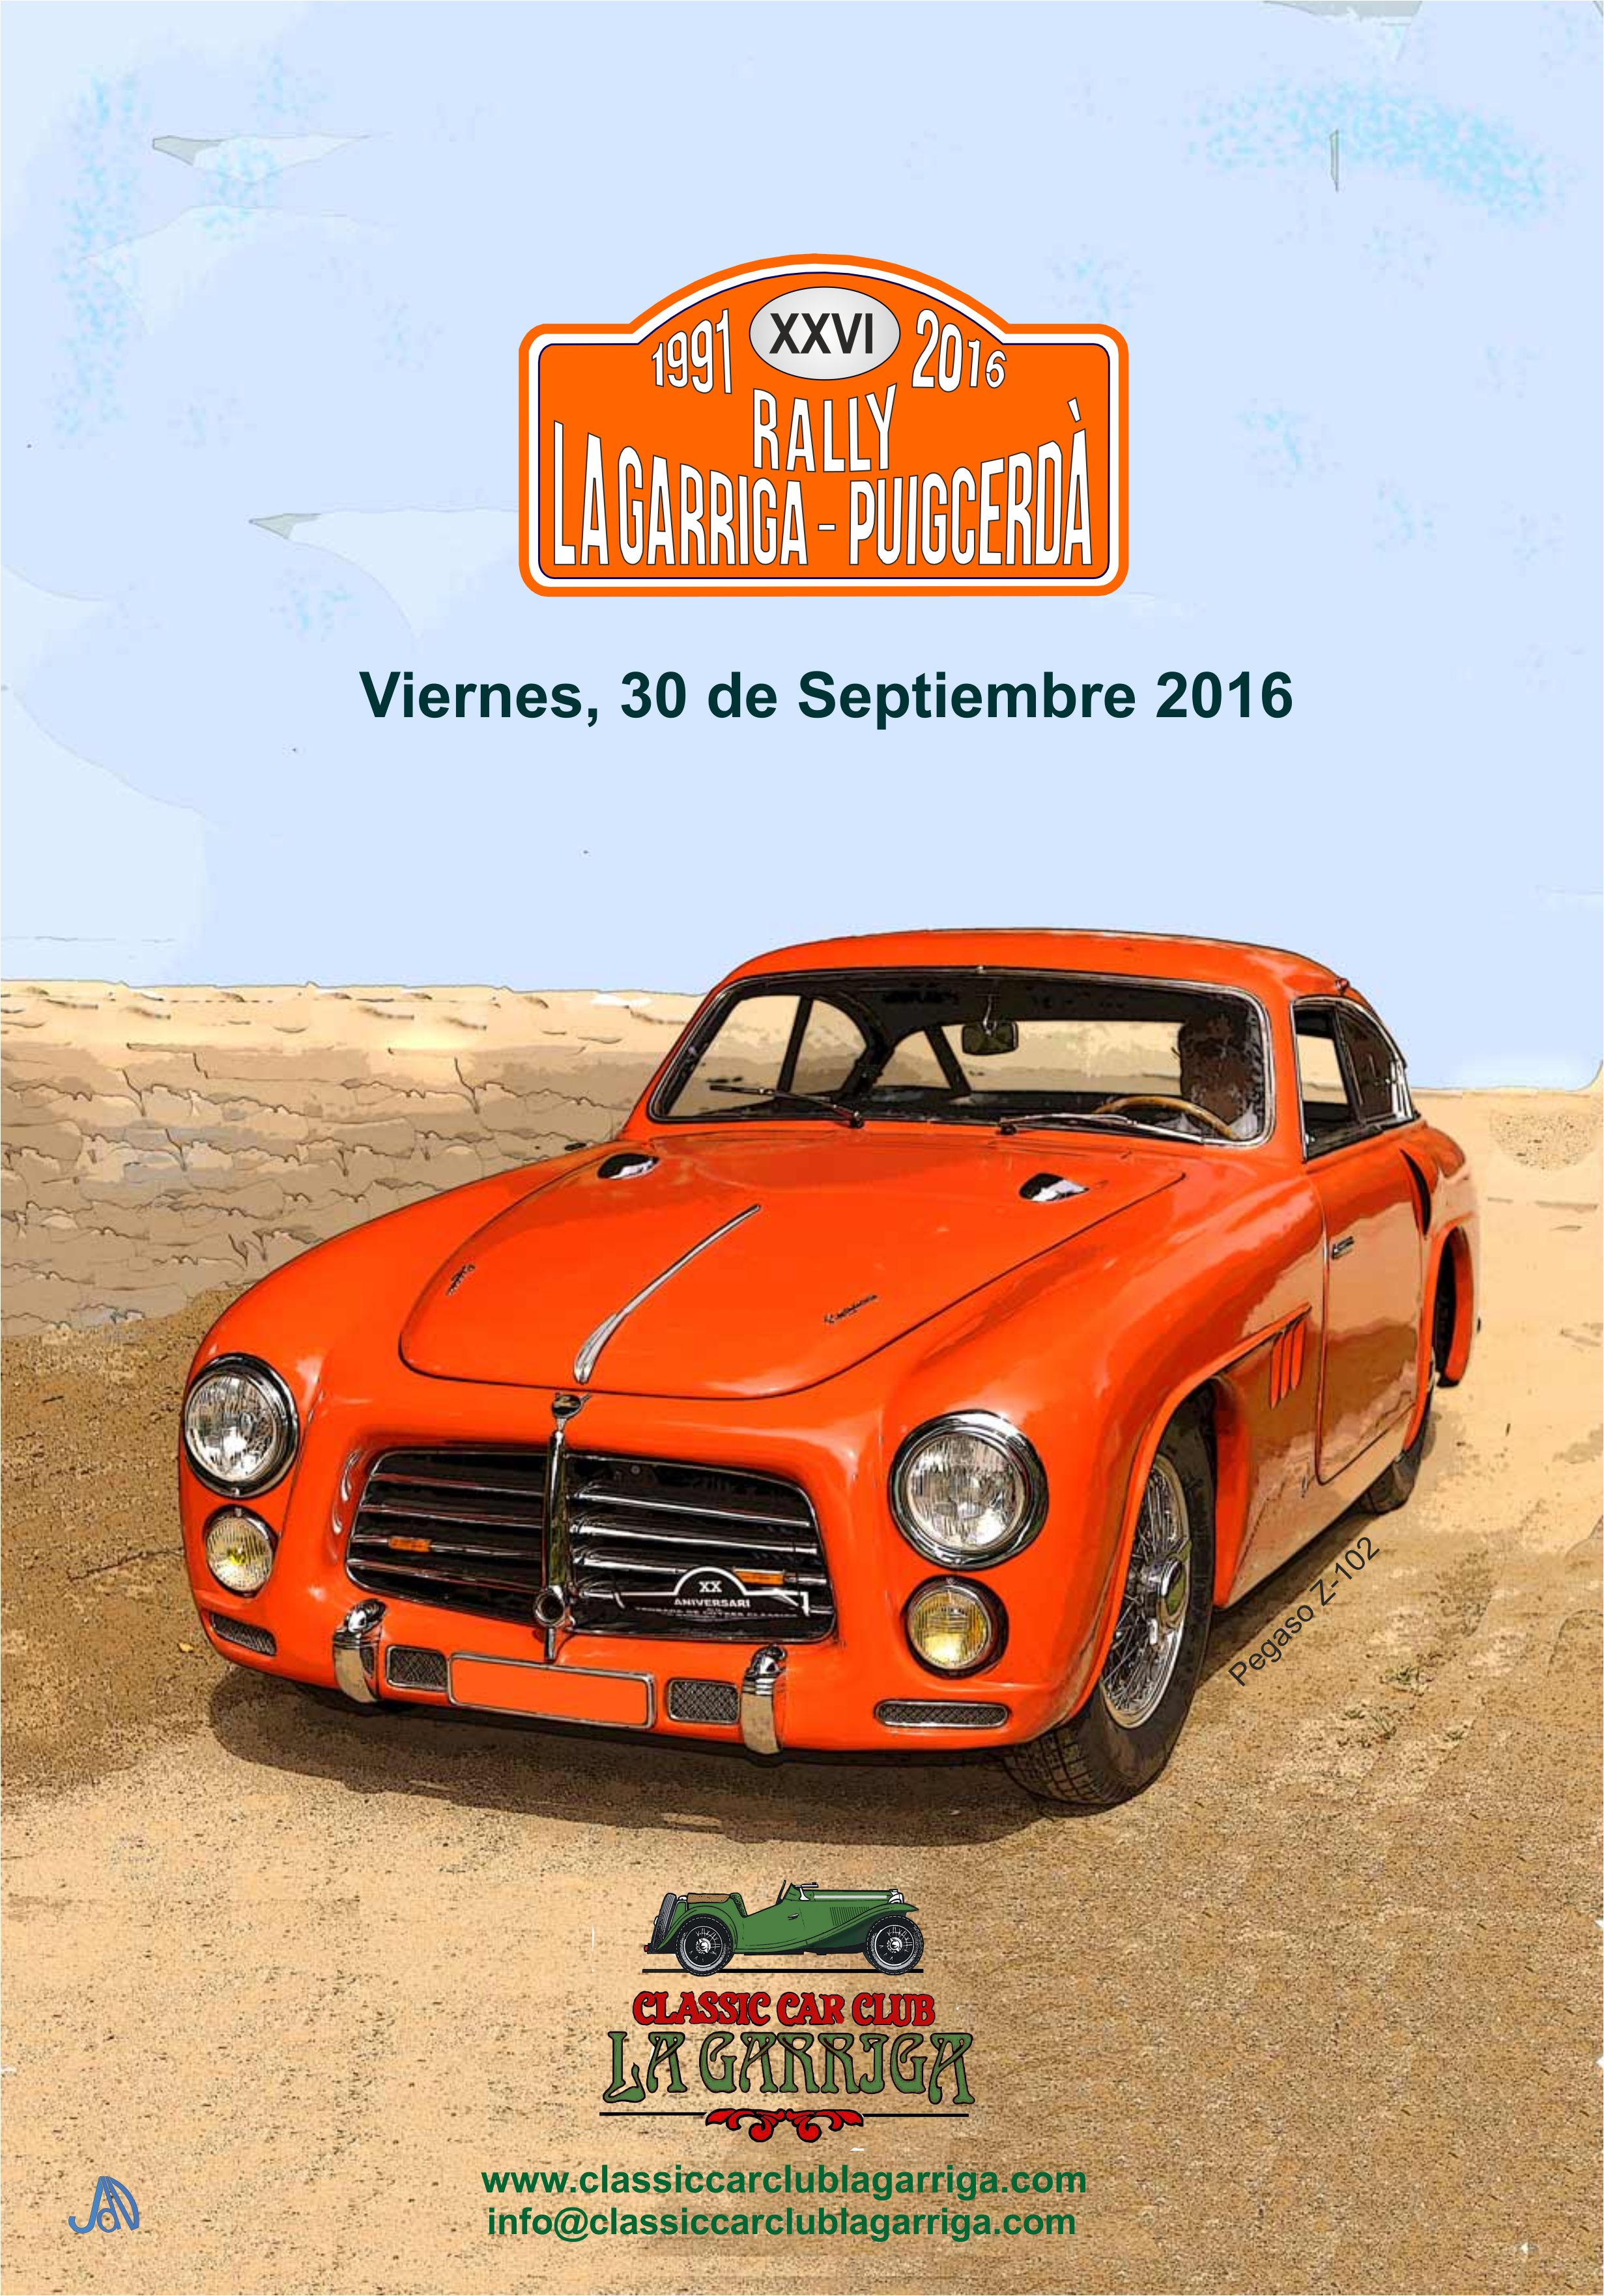 Divendres 30 de setembre se celebrarà la XXVI edició del Rally de Clàssics La Garriga-Puigcerdà, organitzat pel Classic Car Club La Garriga.